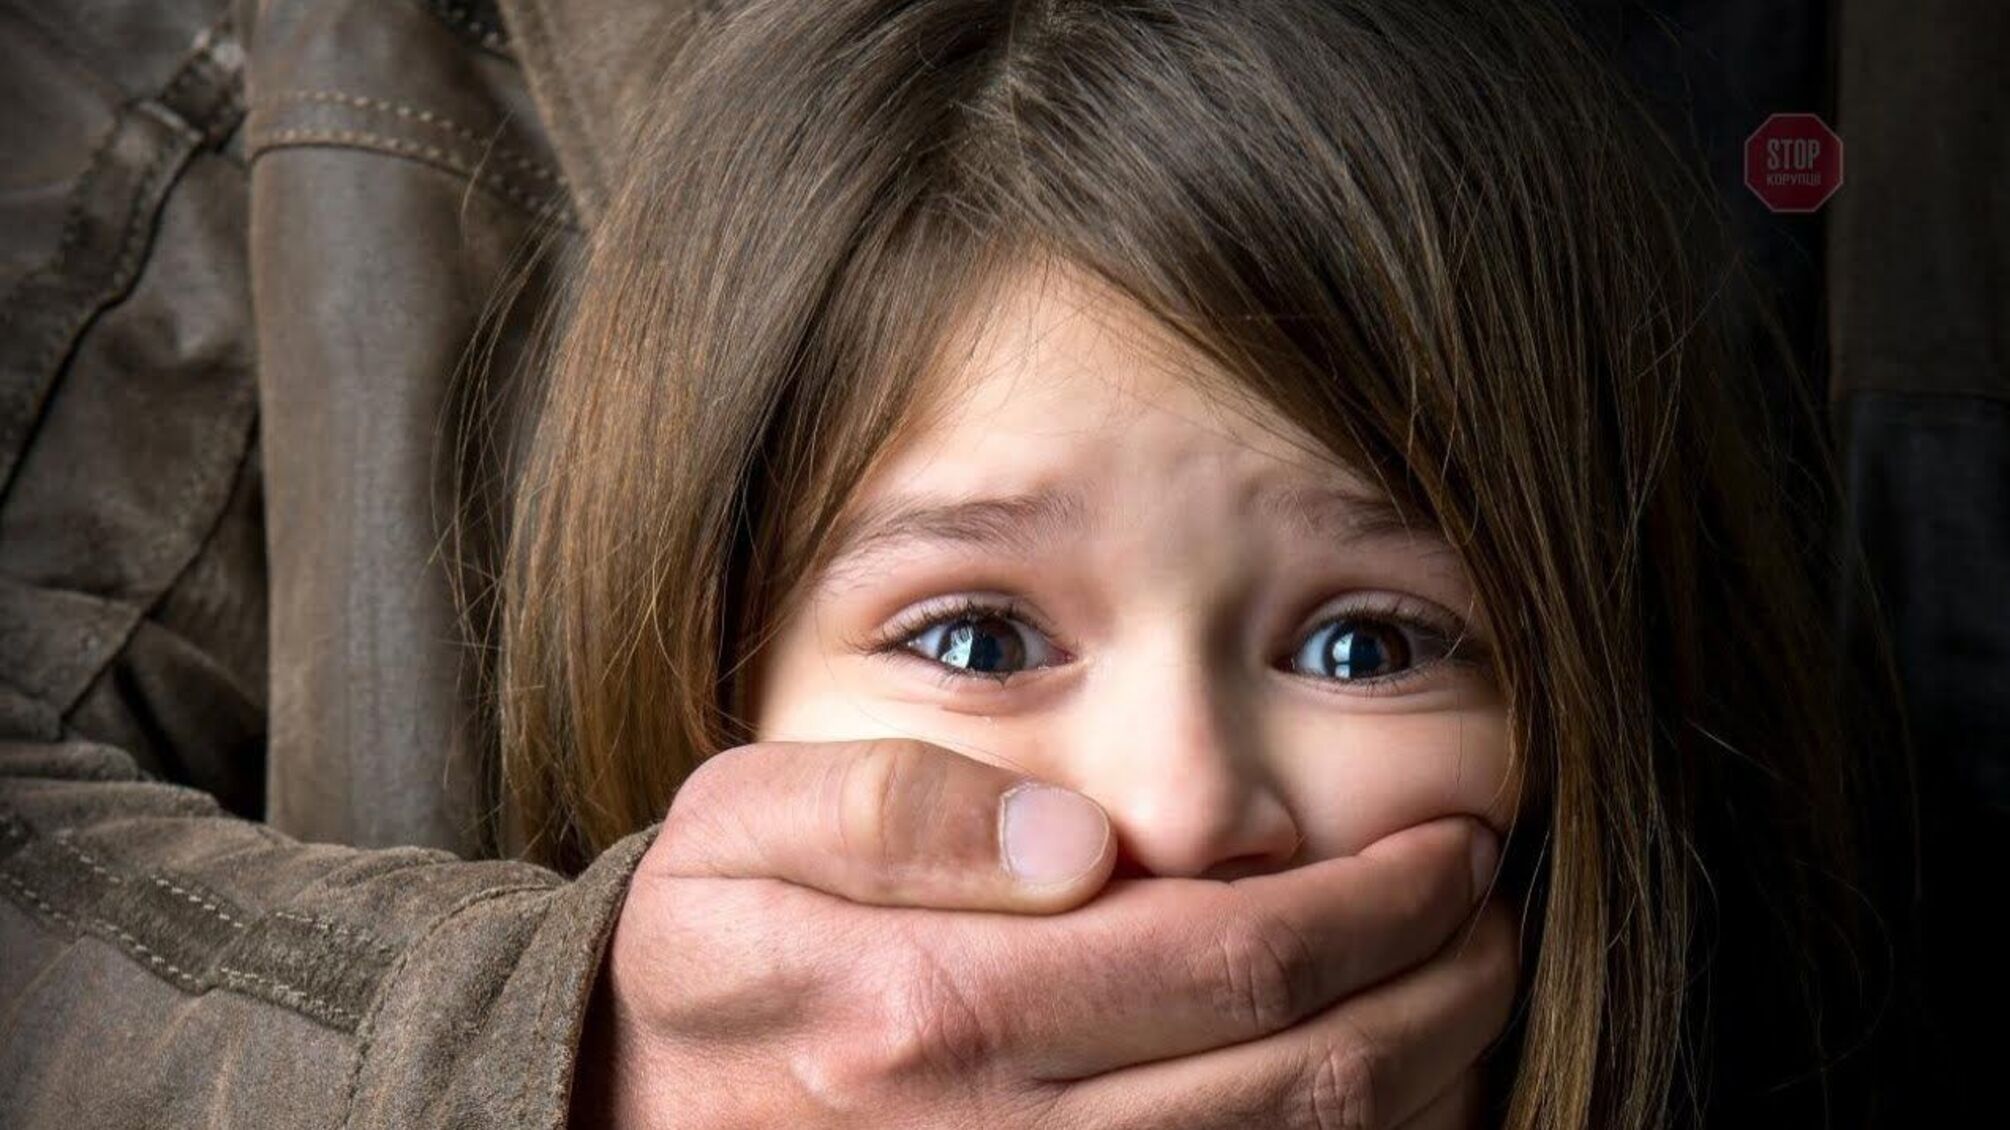 Спочатку покликав дитину до себе, а потім намагався зґвалтувати: на Дніпропетровщині затримали збоченця (фото)